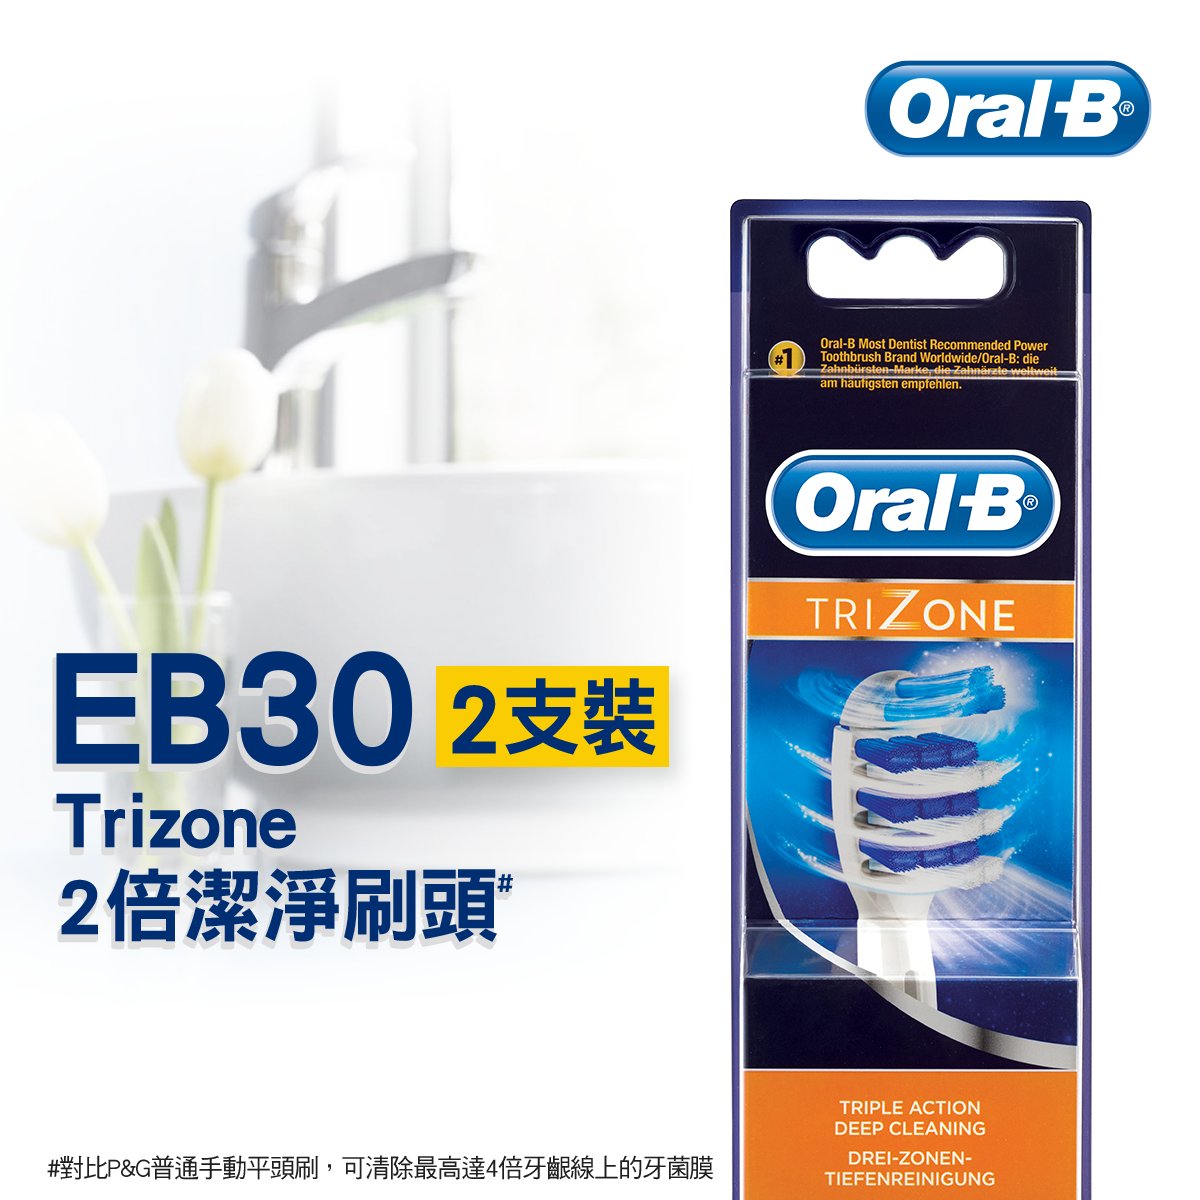 EB30 Trizone智能刷頭/電動牙刷刷頭 - 2支裝 (替換刷頭)